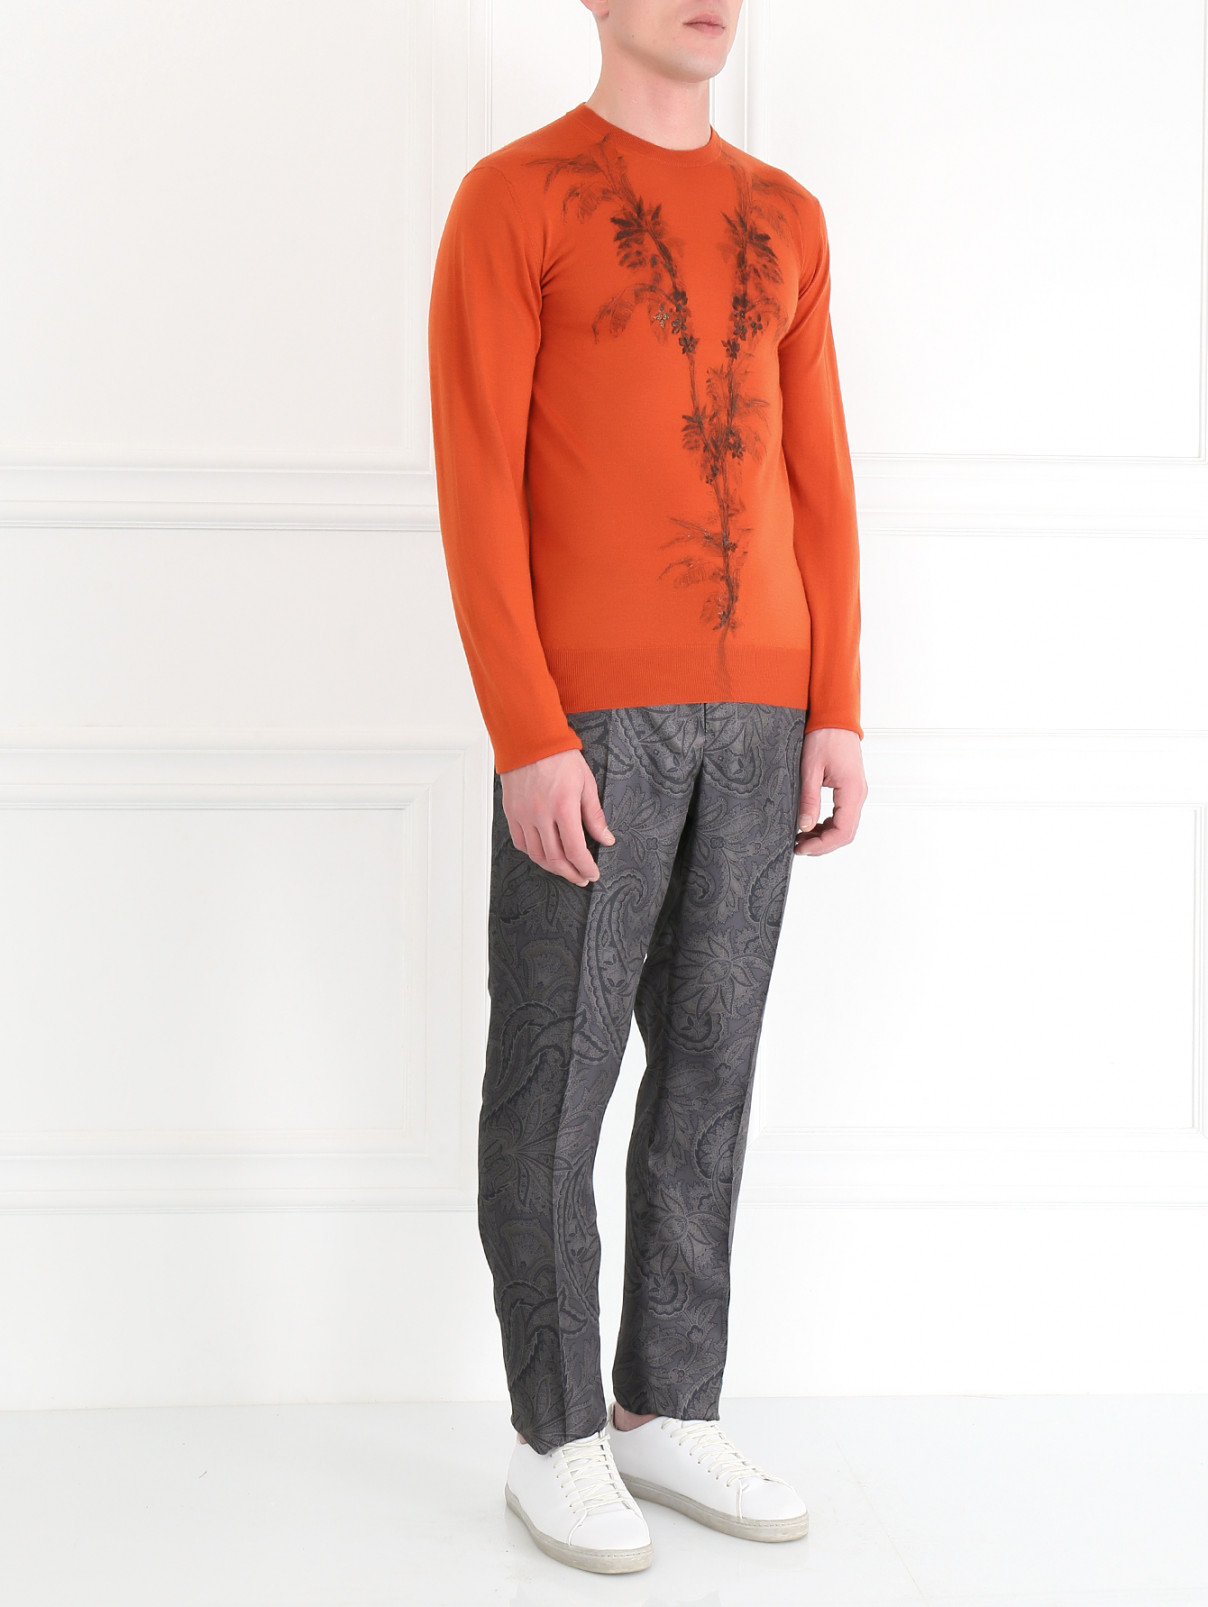 Джемпер из шерсти и шелка с принтом Etro  –  Модель Общий вид  – Цвет:  Оранжевый